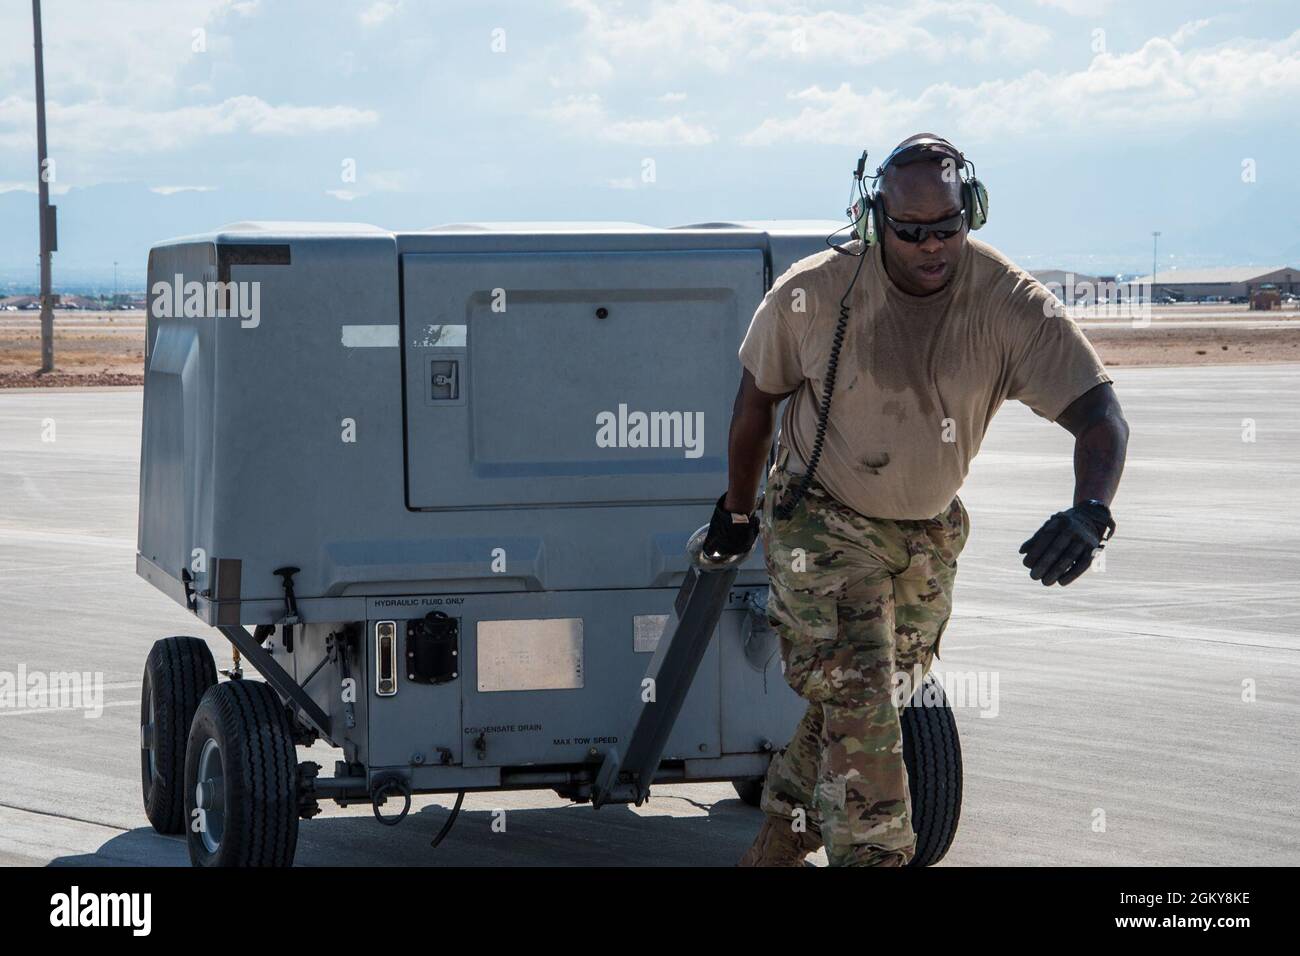 Tecnología. SGT. Markus Johnson, un mantenedor del Escuadrón de Operaciones de Mantenimiento 552nd, trabaja para preparar el avión E-3 Sistemas de Control y Alerta Aerotransportados para el vuelo durante la Bandera Roja 21-3, que está teniendo lugar en la Base de la Fuerza Aérea de Nellis, Nevada, del 19 de julio al 6 de agosto de 2021. La Bandera Roja proporciona a los equipos de aviación la experiencia de realizar múltiples e intensivas incursiones de combate aéreo en la seguridad de un entorno de entrenamiento. El entrenamiento se lleva a cabo en el Nevada Test and Training Range, el principal área de entrenamiento militar de la Fuerza Aérea de los Estados Unidos, con más de 12.000 millas cuadradas de espacio aéreo y 2,9 millones de acres de tierra. N Foto de stock